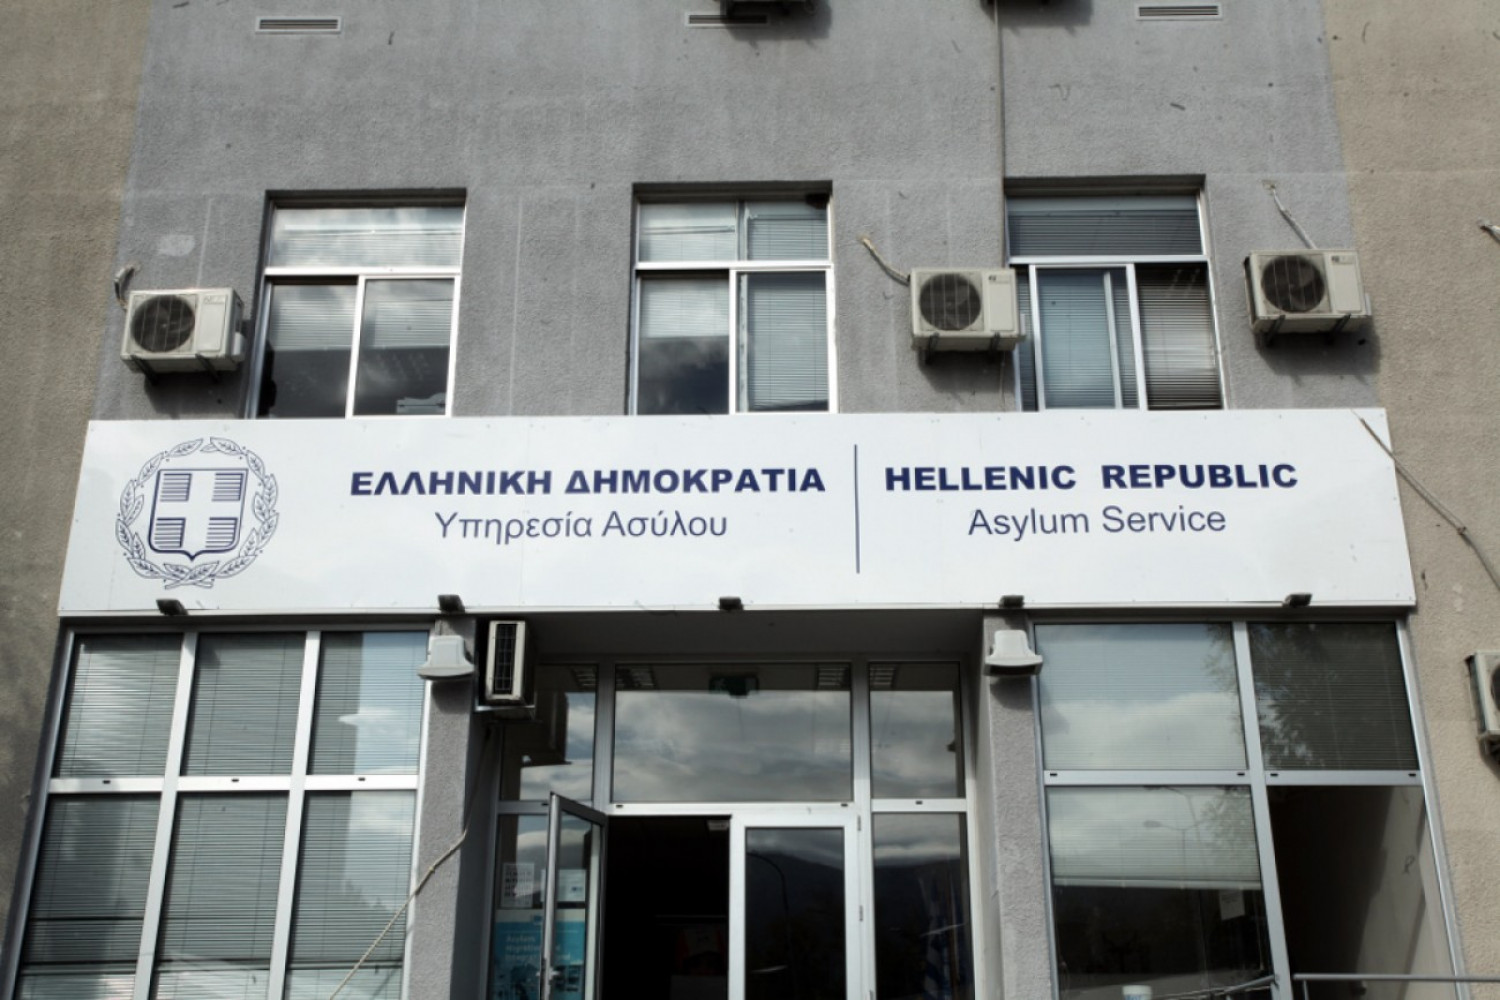 Αύξηση των κρουσμάτων κορονοϊού στην Υπηρεσία Ασύλου Θεσσαλονίκης